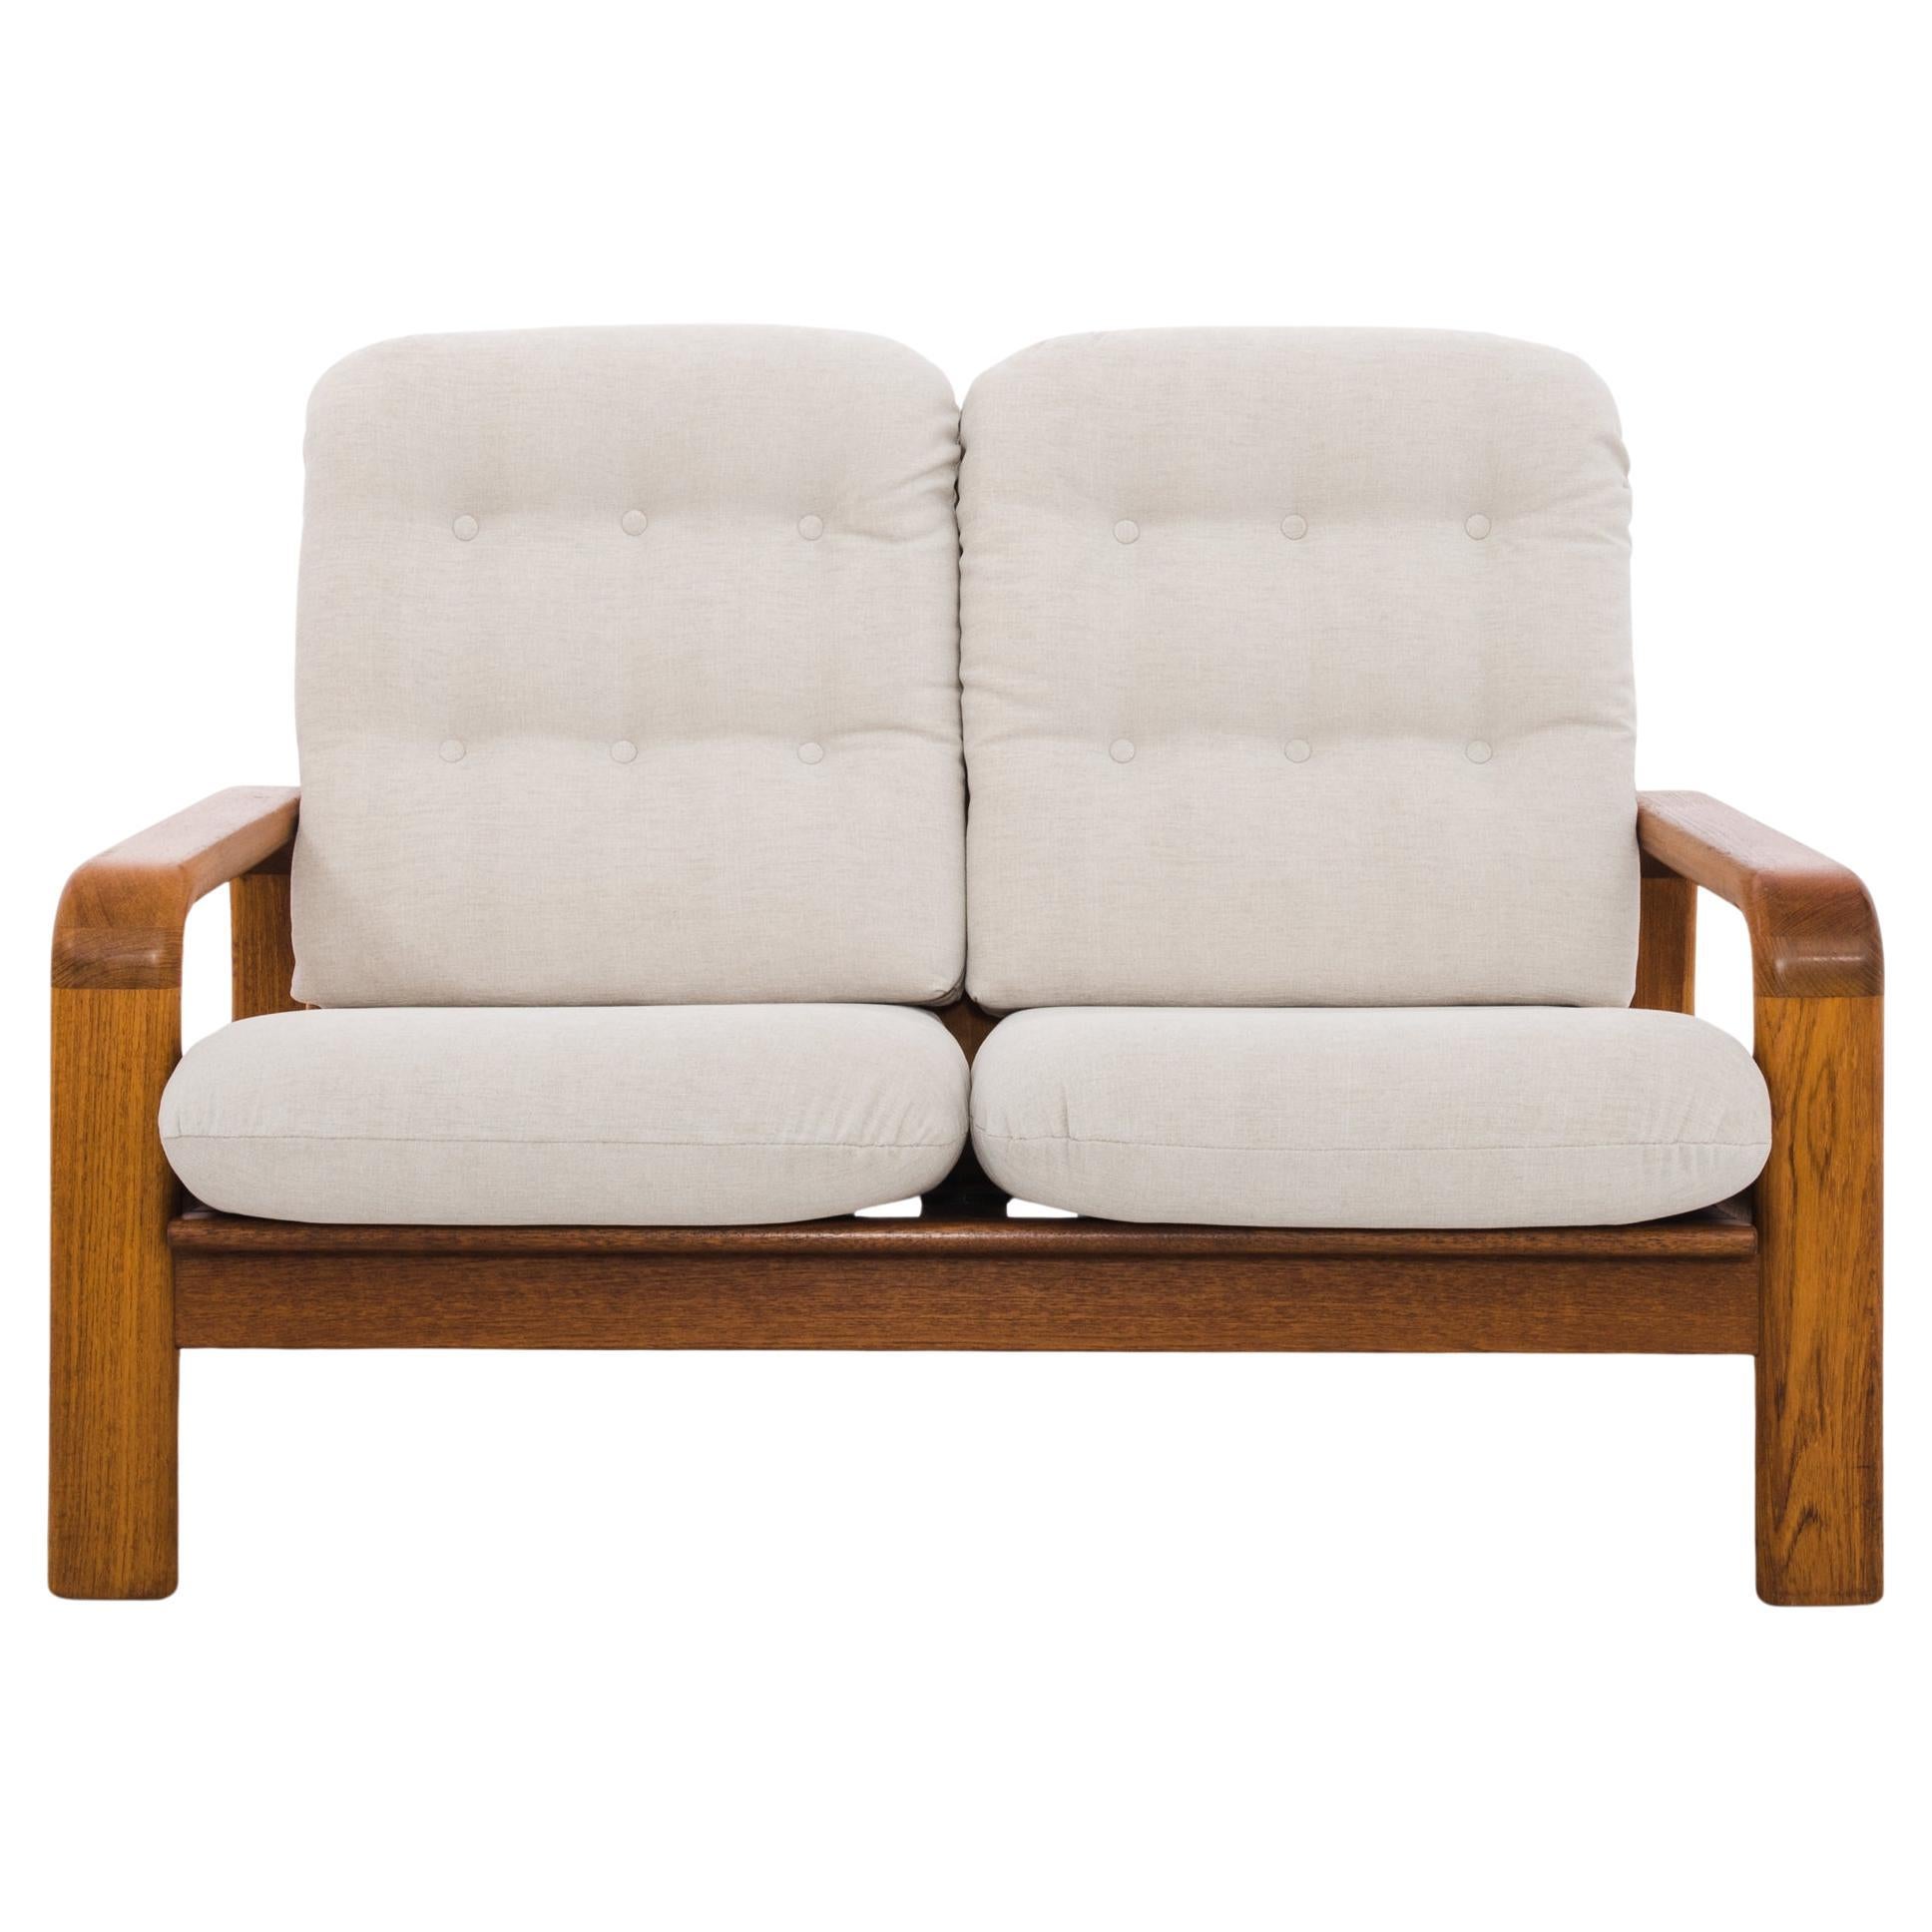 1960s Danish Teak Upholstered Sofa